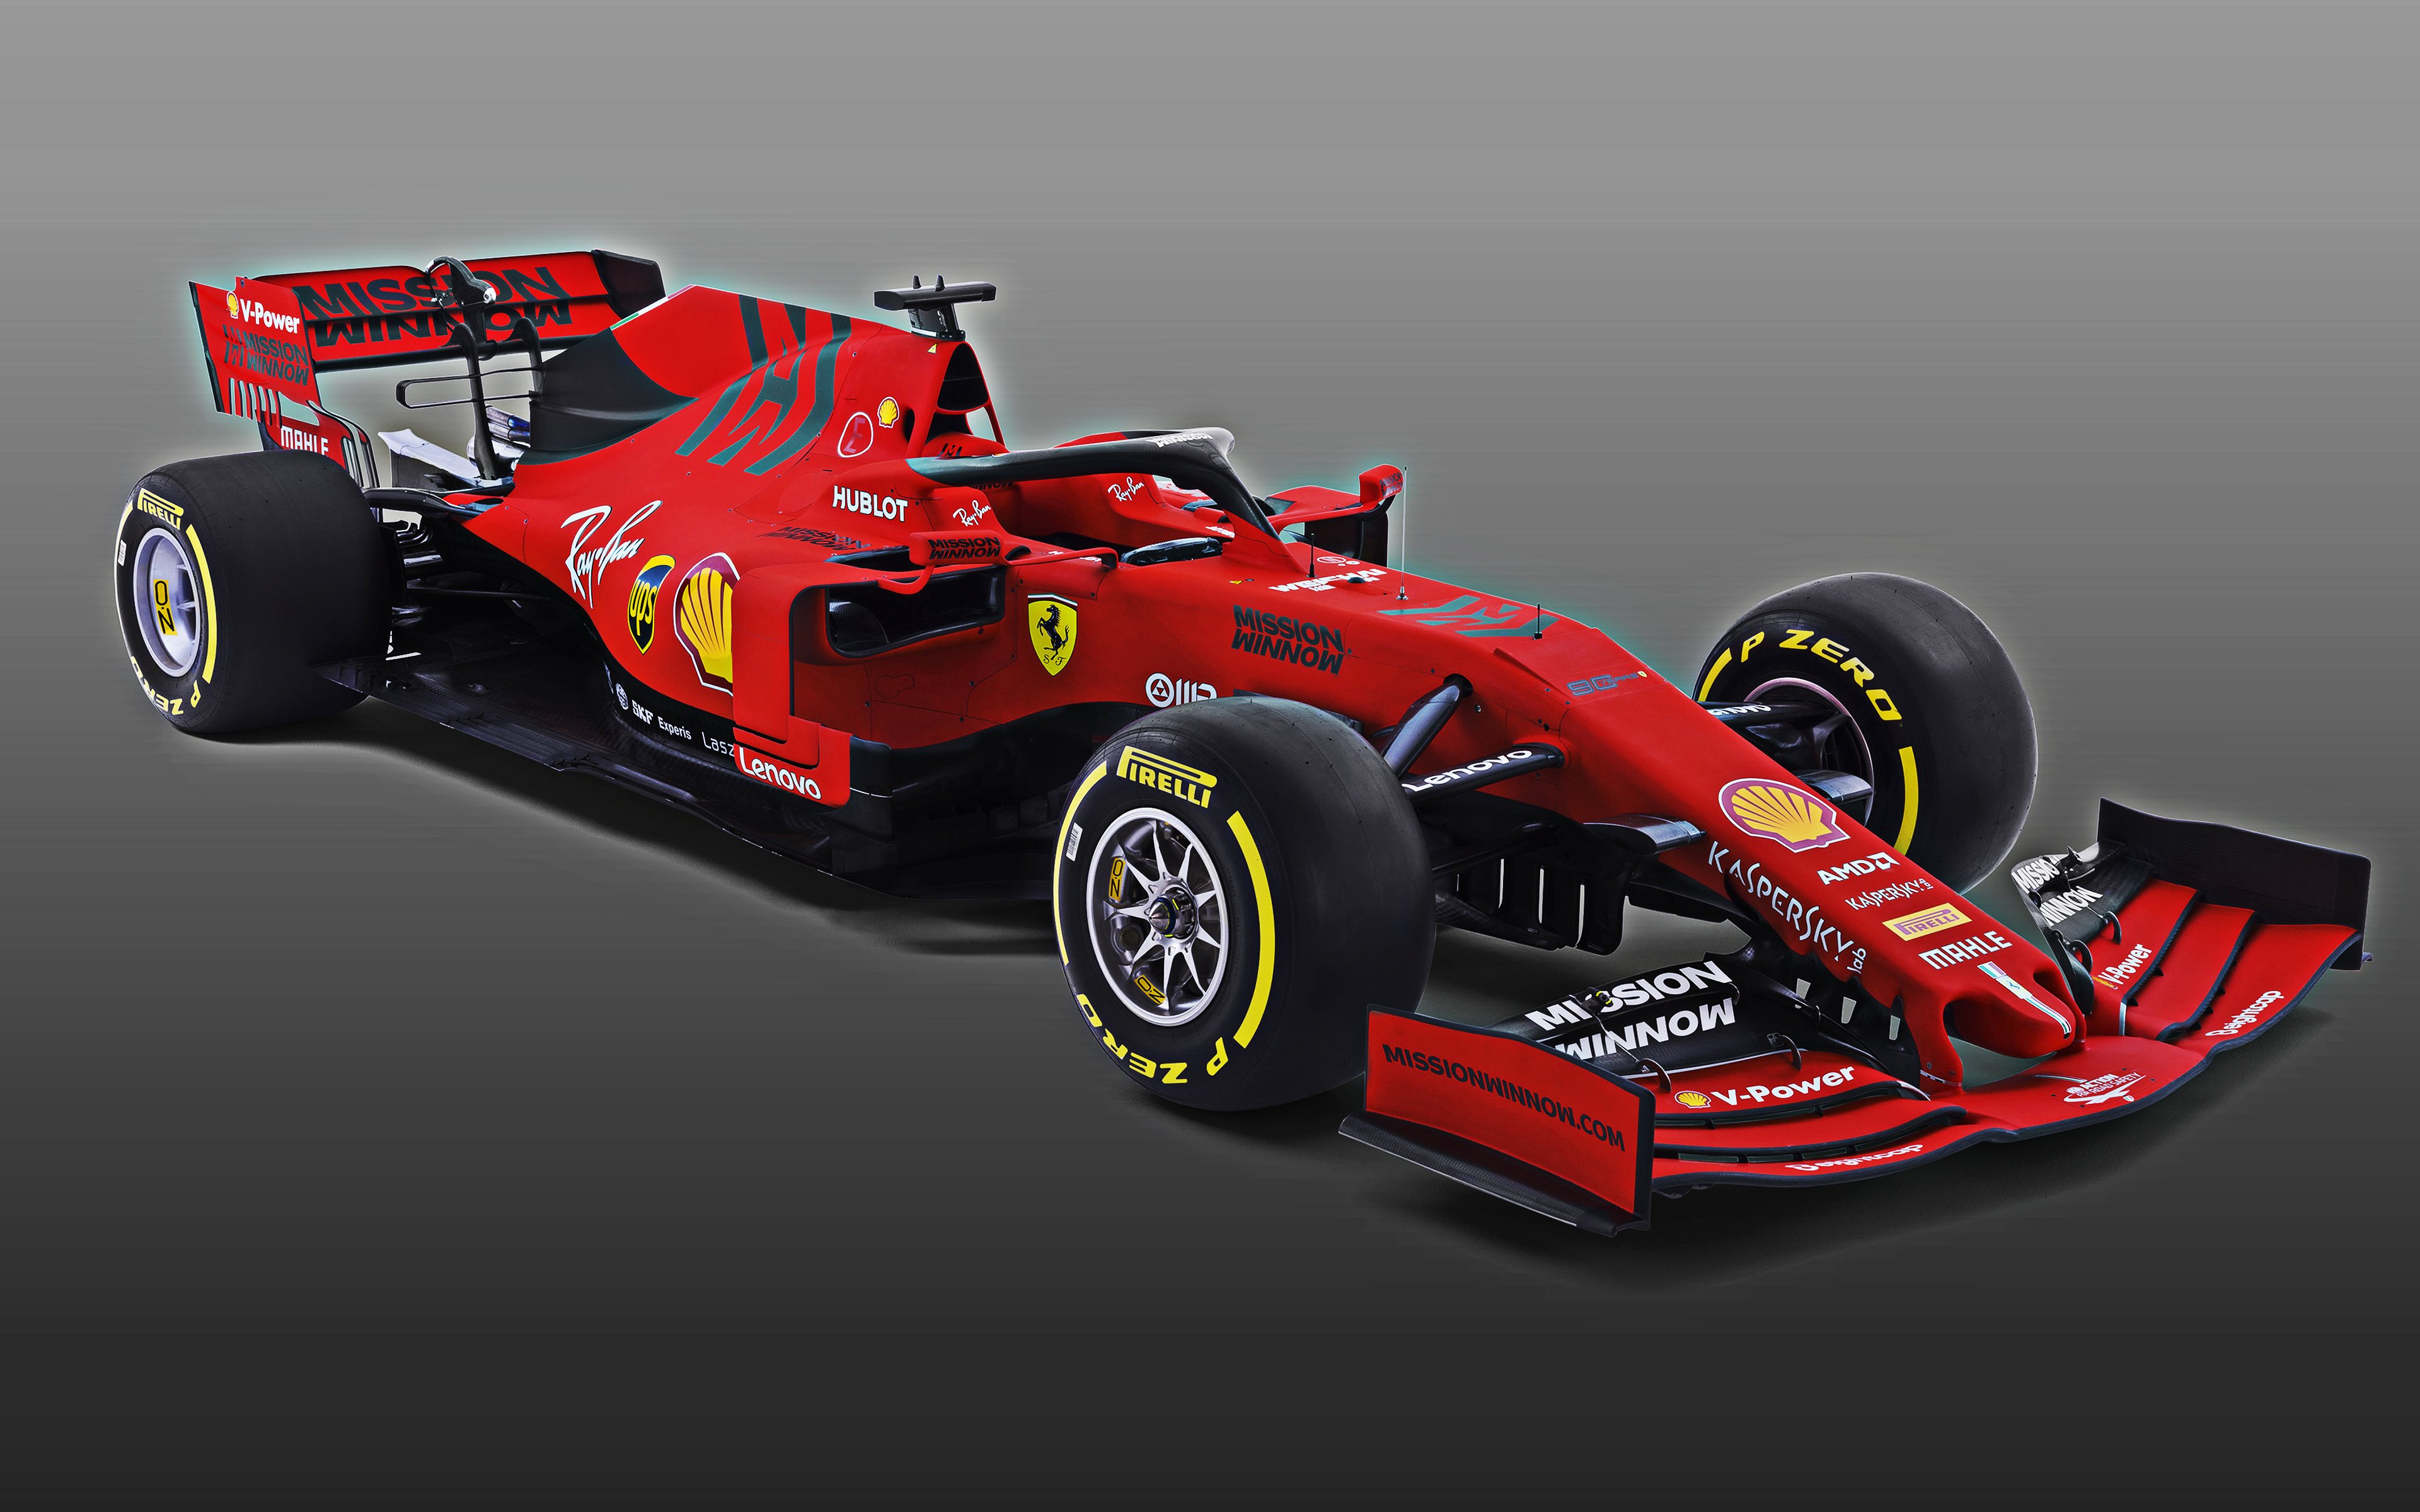 Download wallpapers Ferrari SF90, 2019, new 2019 F1 car, Formula 1, new racing car Ferrari, F1 ...